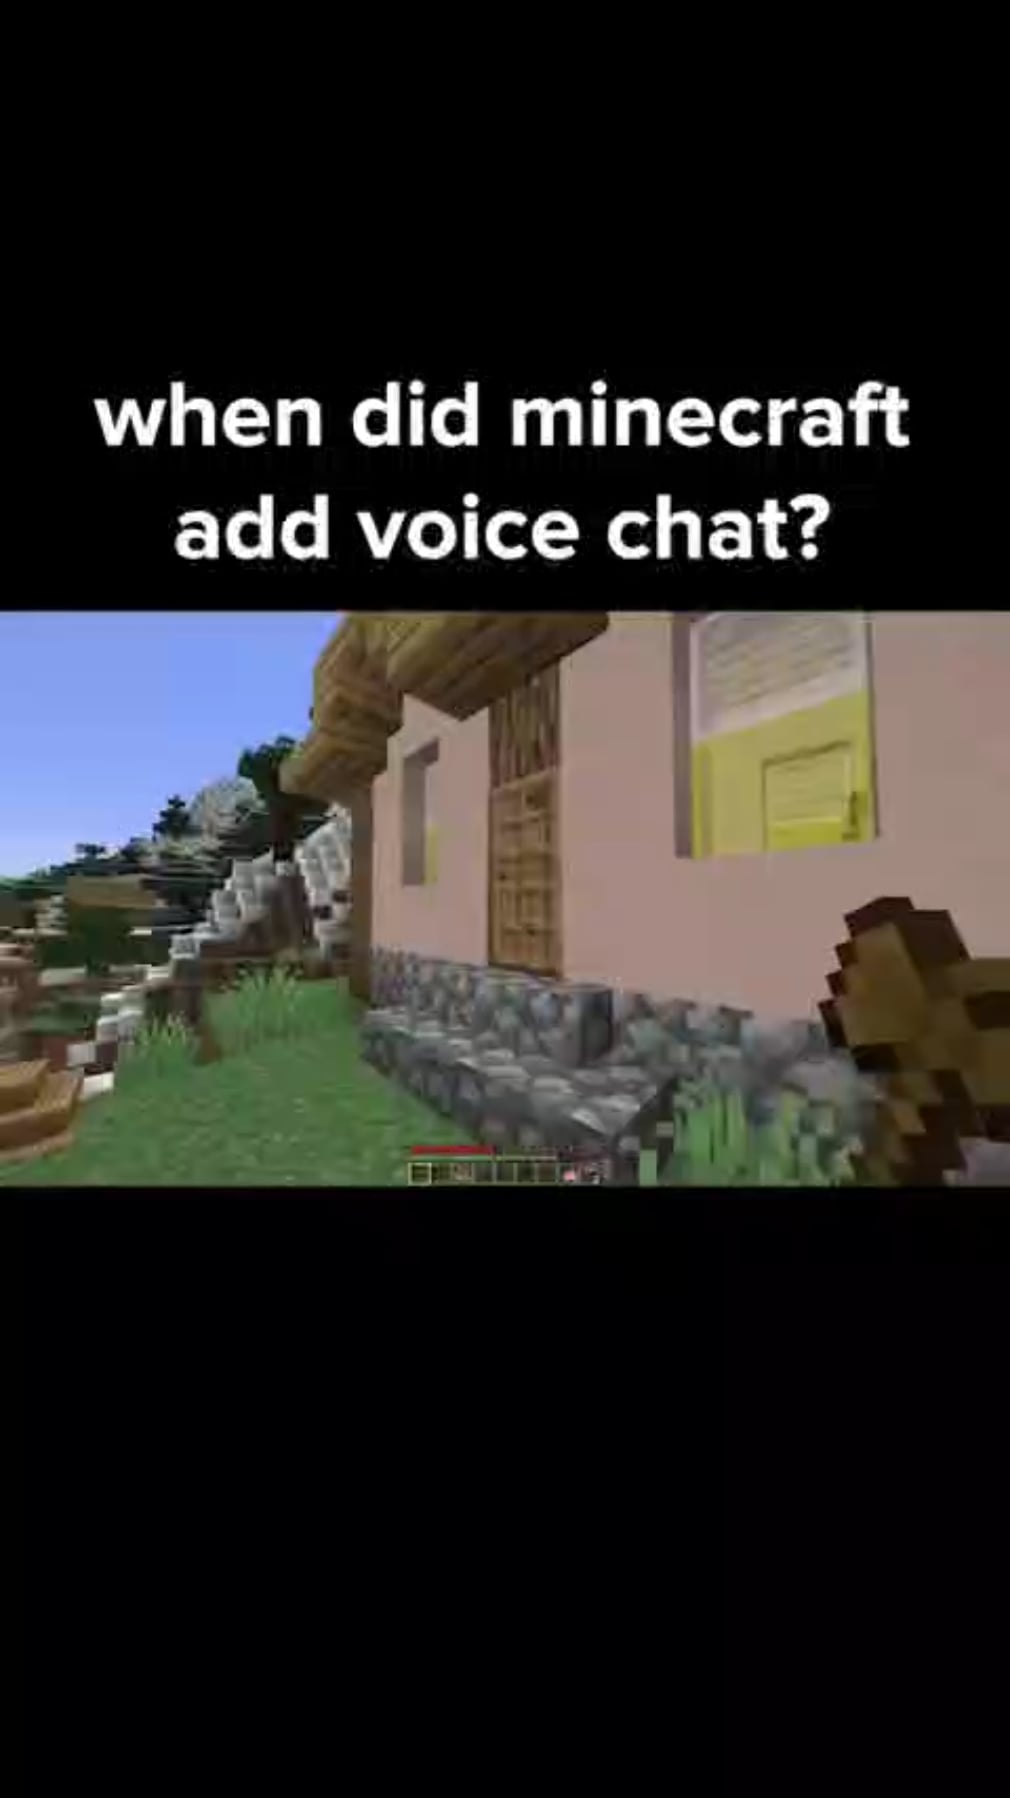 Minecraft Memes - Minecraft's got voice chat?!